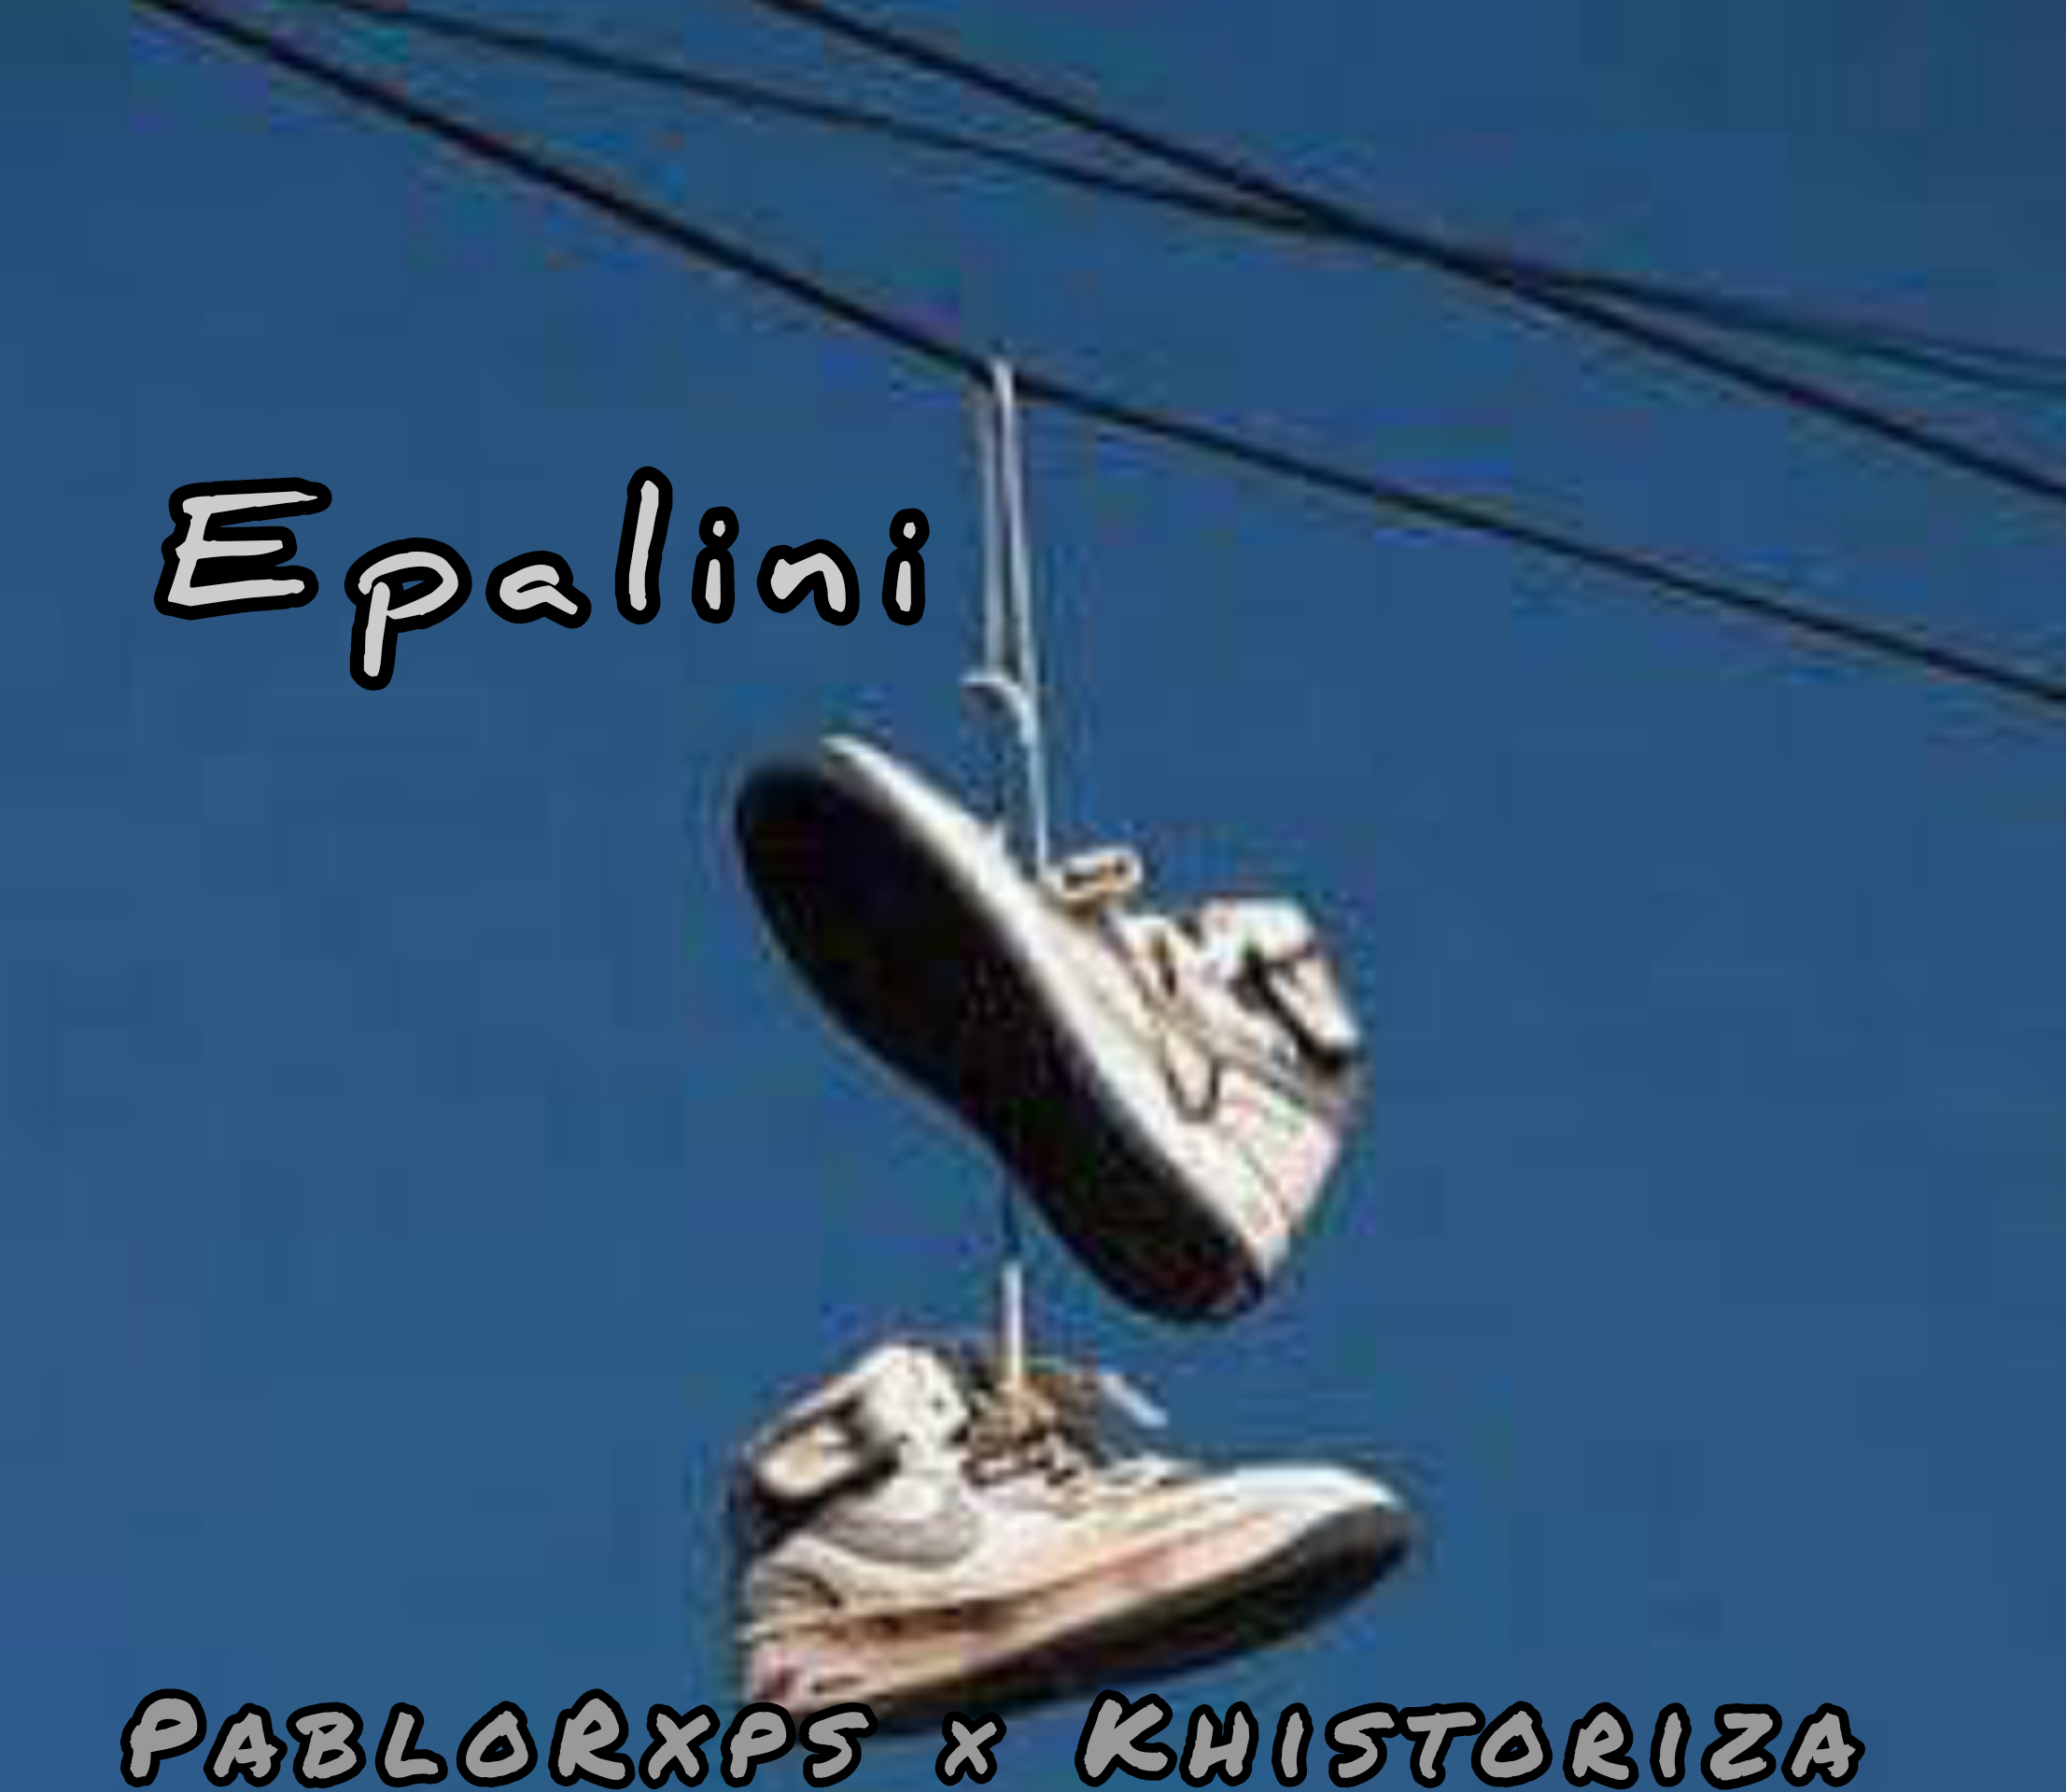 Epalini - PabloRxps × Khistoriza The Holly One